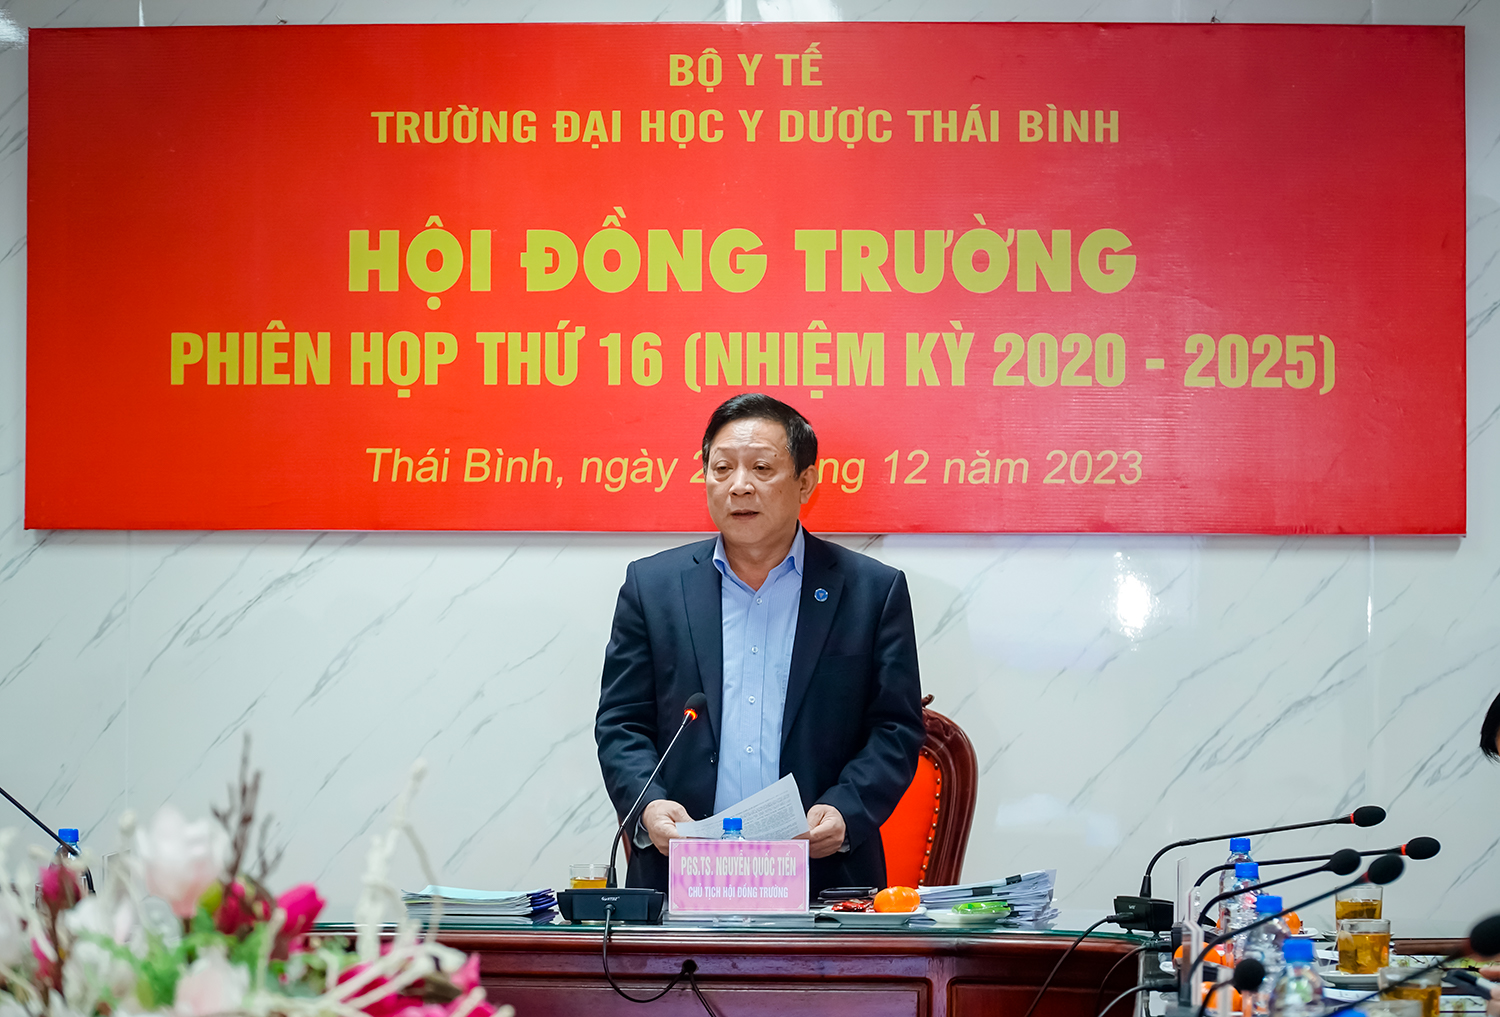 PGS.TS Nguyễn Quốc Tiến - Bí thư Đảng ủy, Chủ tịch Hội đồng trường chủ trì phiên họp